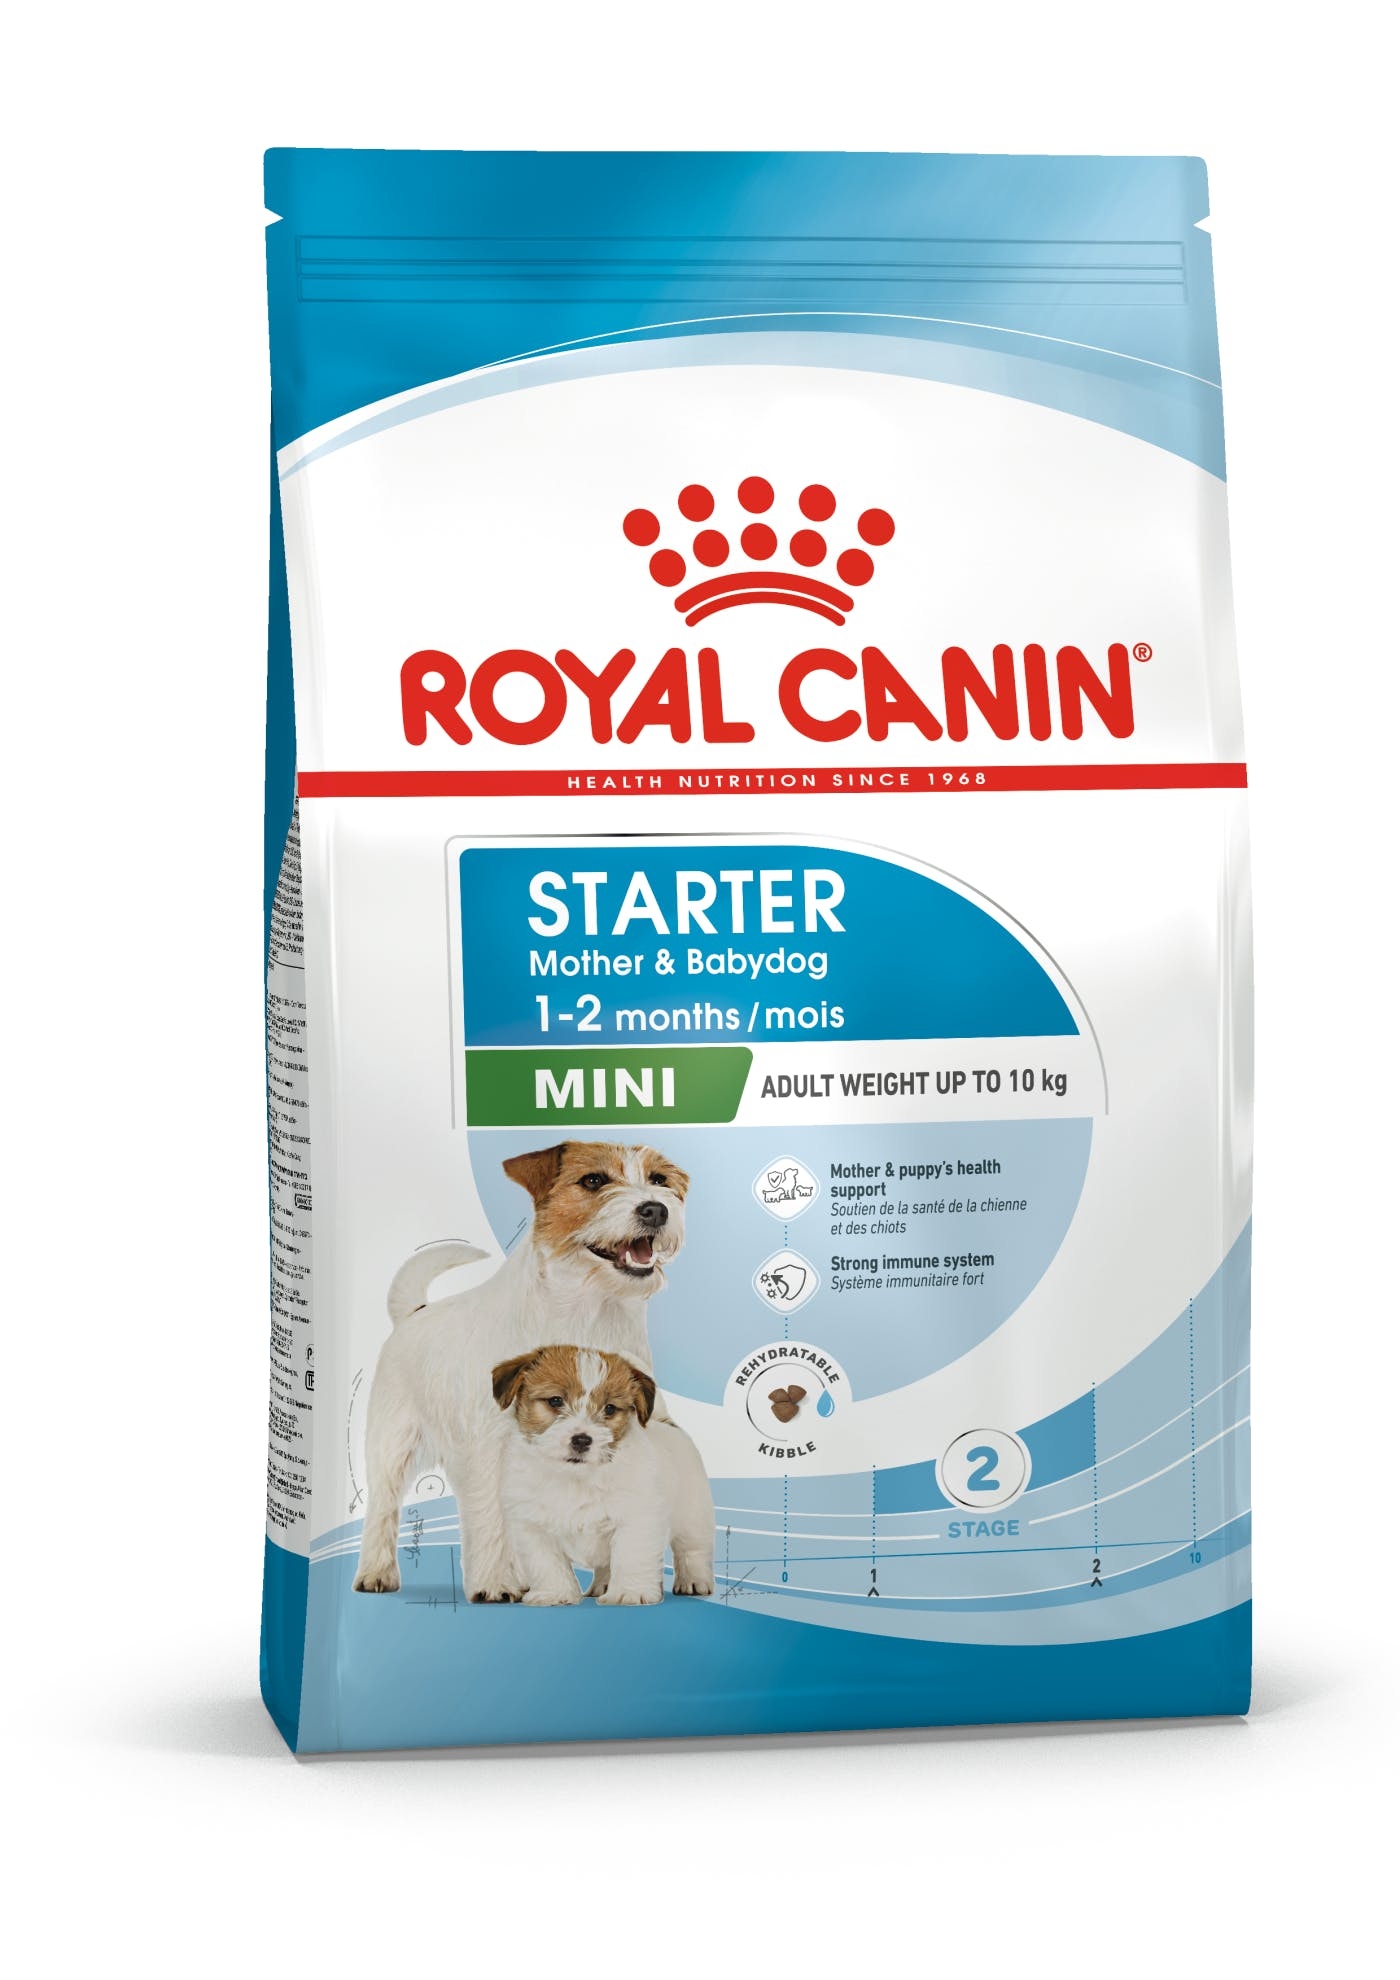 Billede af Royal Canin Mini Starter Mother & Babydog. Voksenvægt 1-10 kg